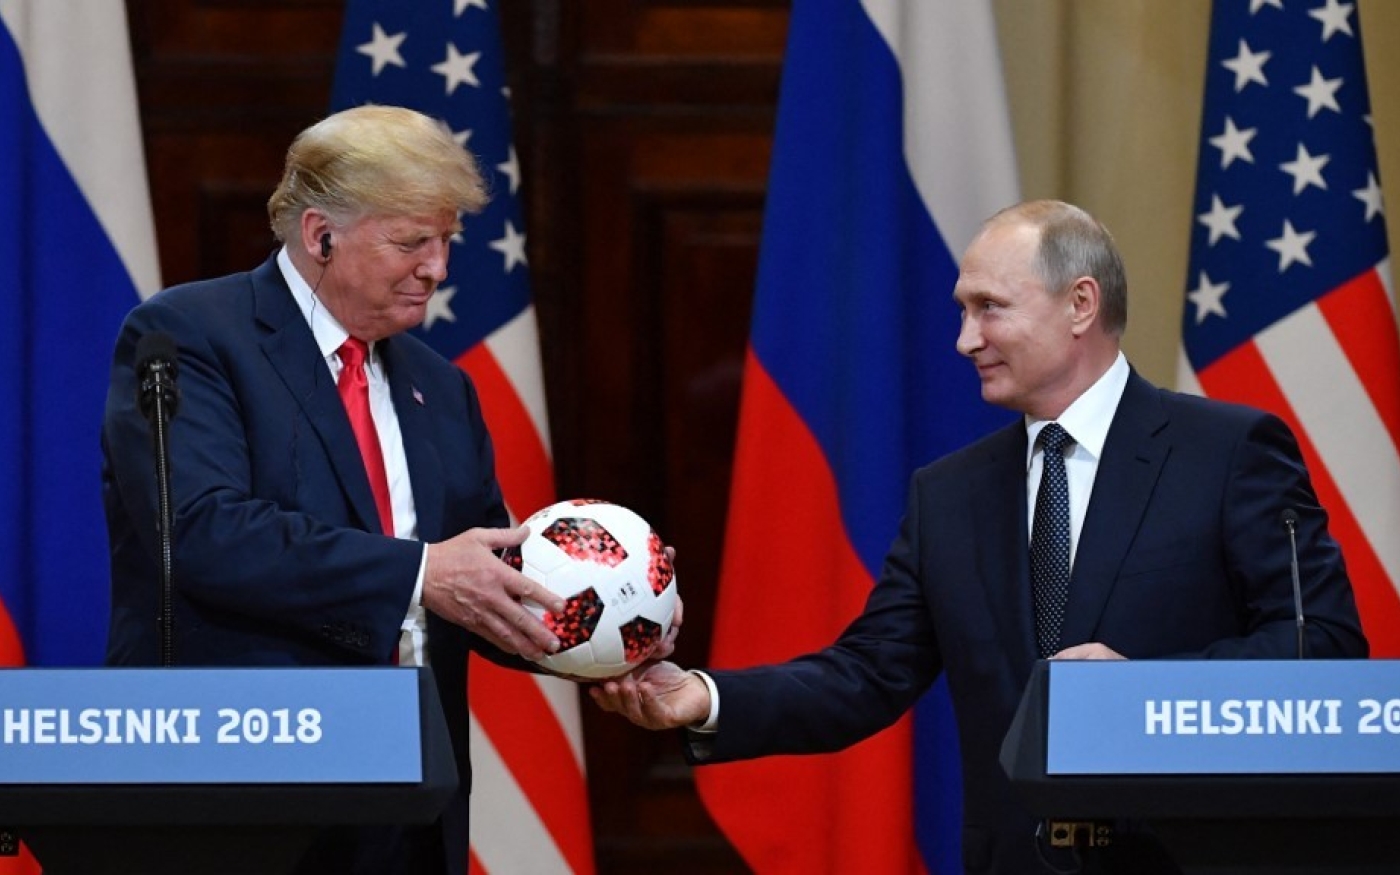 Le président russe Vladimir Poutine offre un ballon de la Coupe du monde 2018 à Donald Trump, alors président américain, lors d’une conférence de presse conjointe à Helsinki, en juillet 2018 (AFP)